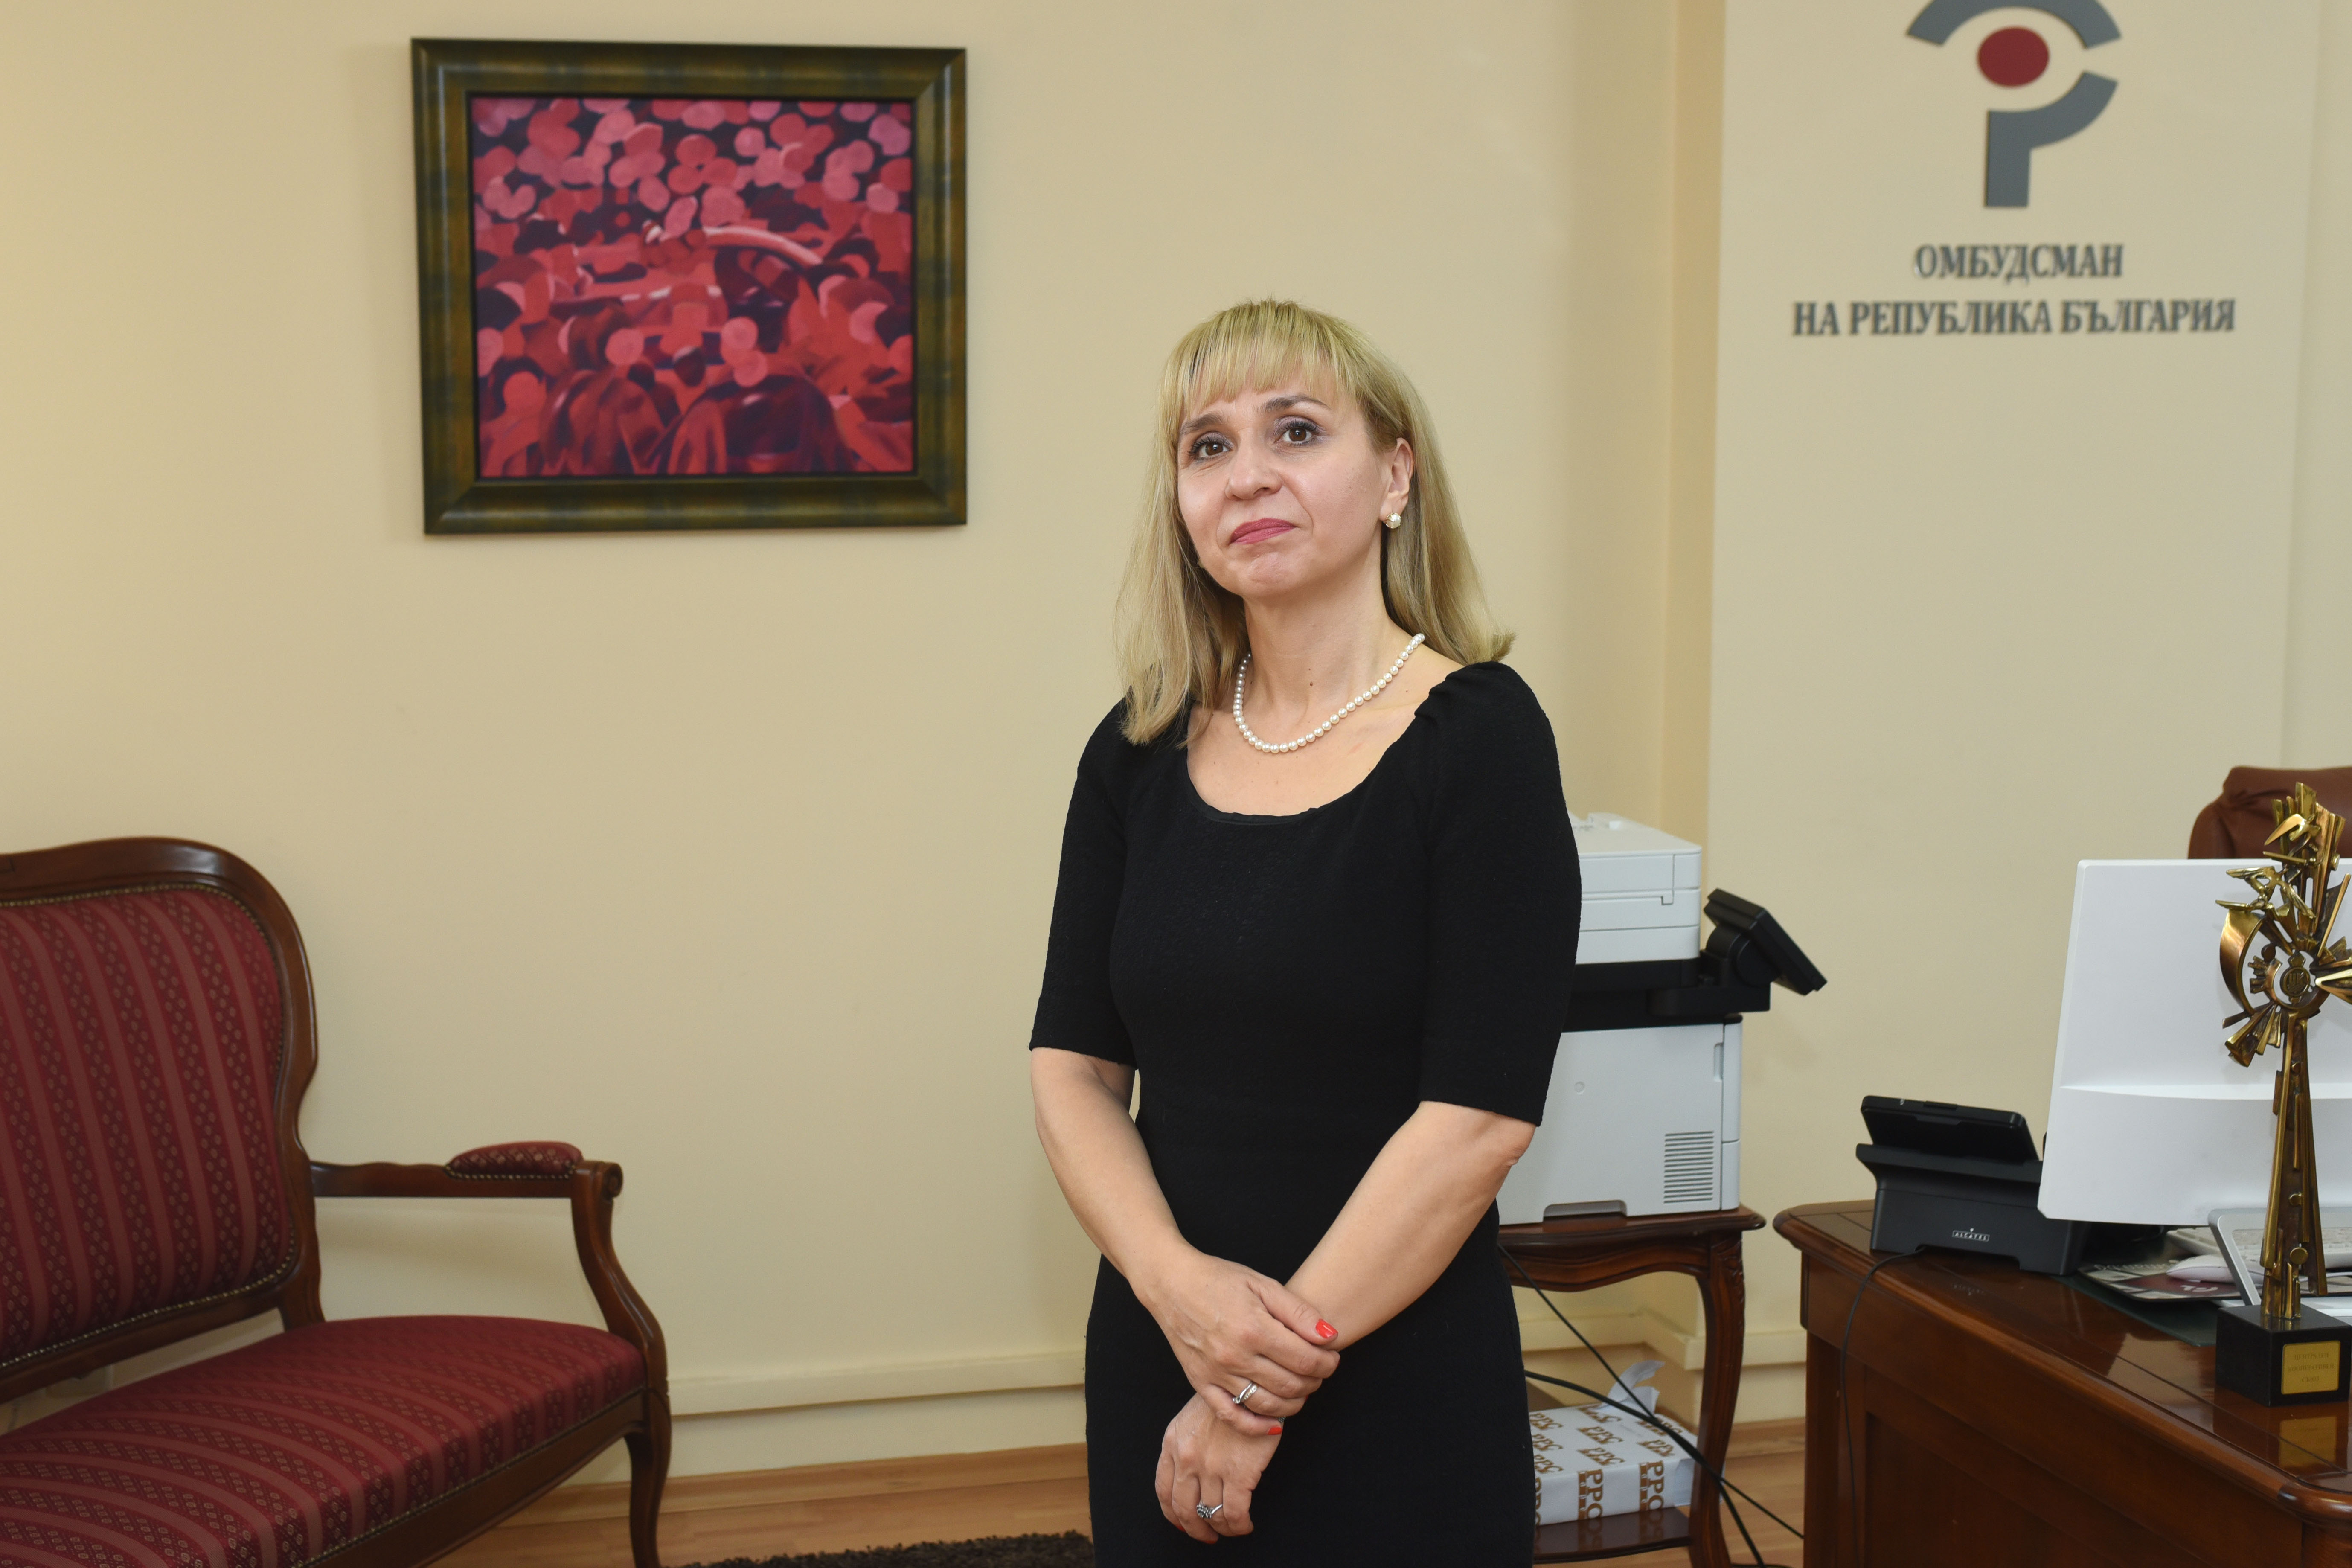 Омбудсманът Диана Ковачева сезира здравния министър проф. д-р Христо Хинков